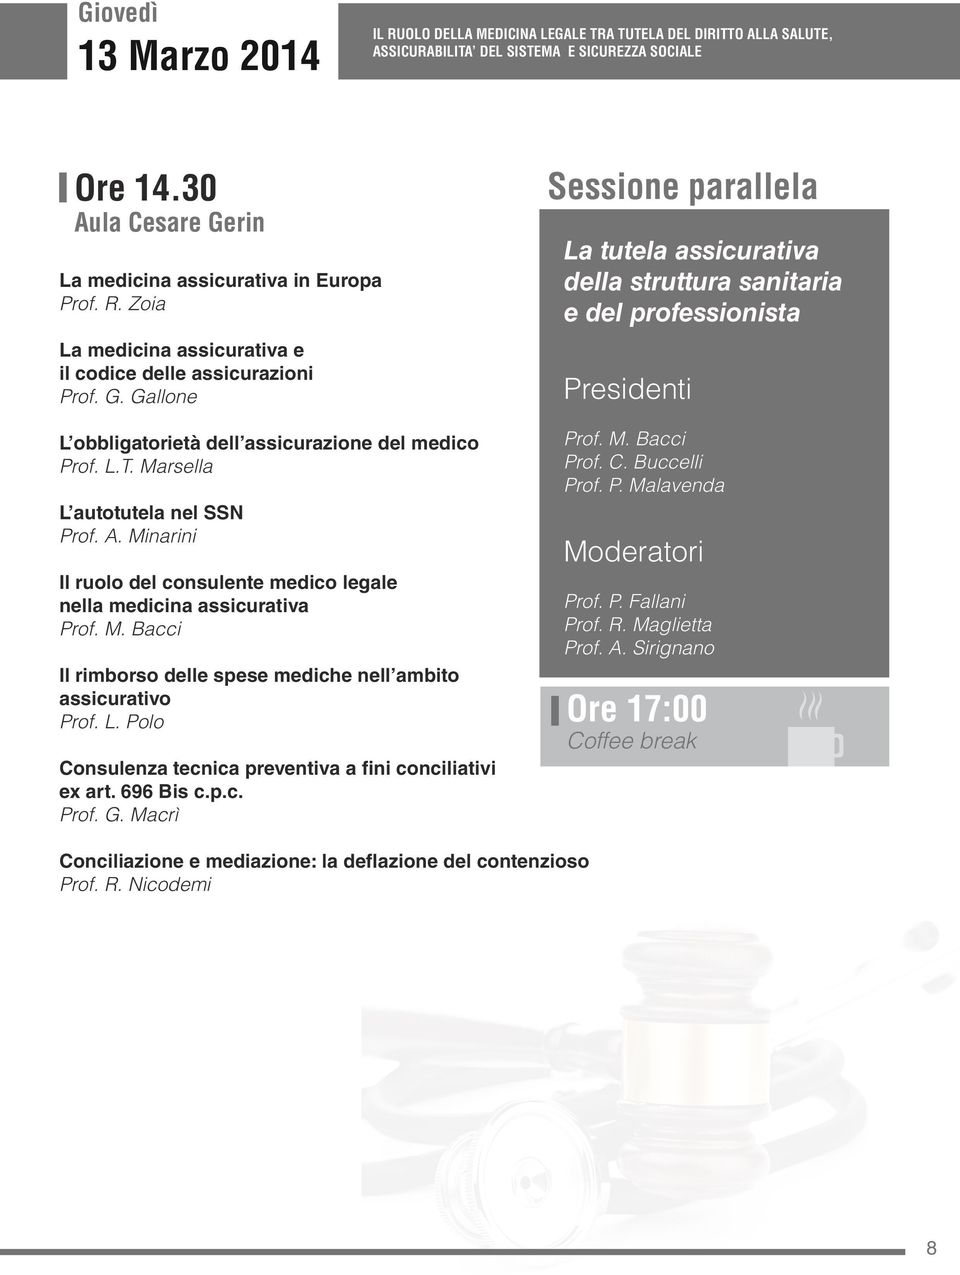 696 Bis c.p.c. Prof. G. Macrì Sessione parallela La tutela assicurativa della struttura sanitaria e del professionista Prof. M. Bacci Prof. C. Buccelli Prof. P. Malavenda Prof. P. Fallani Prof. R.